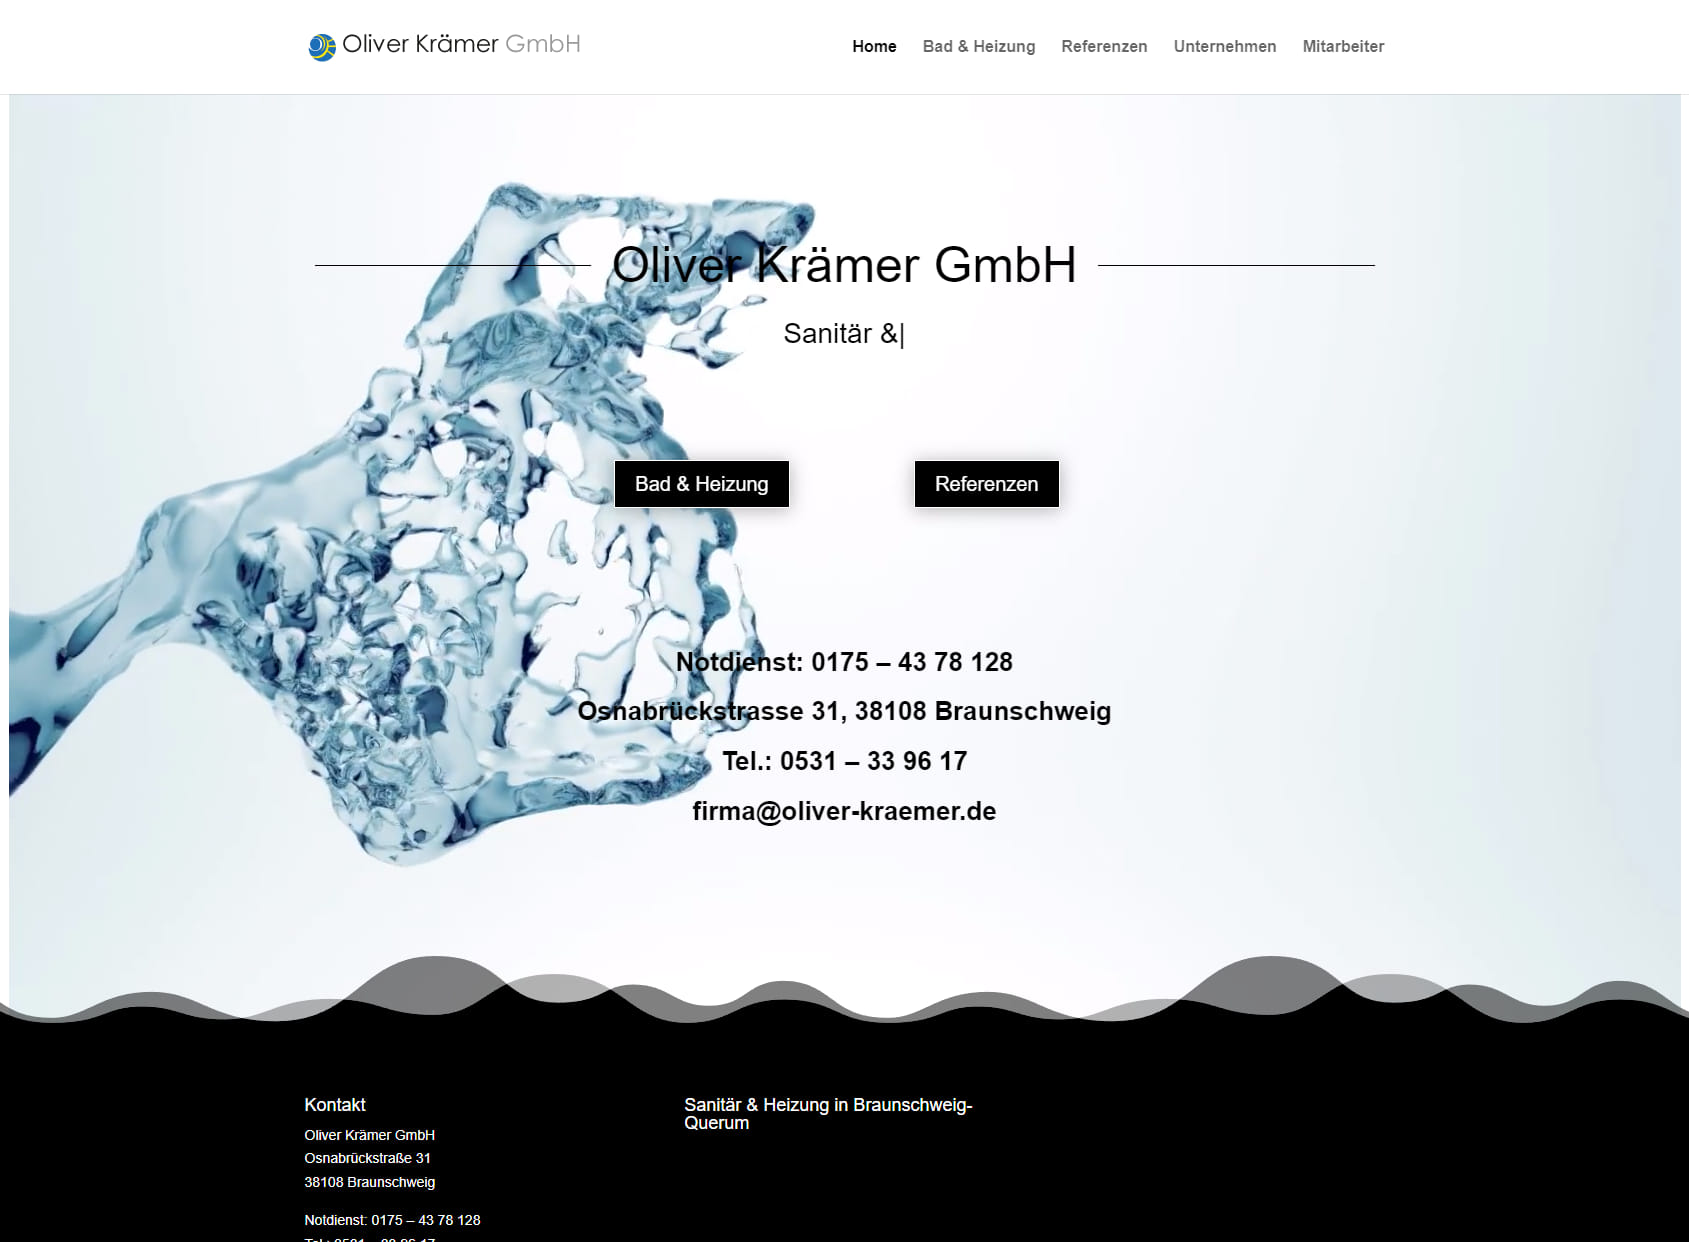 Oliver Krämer GmbH